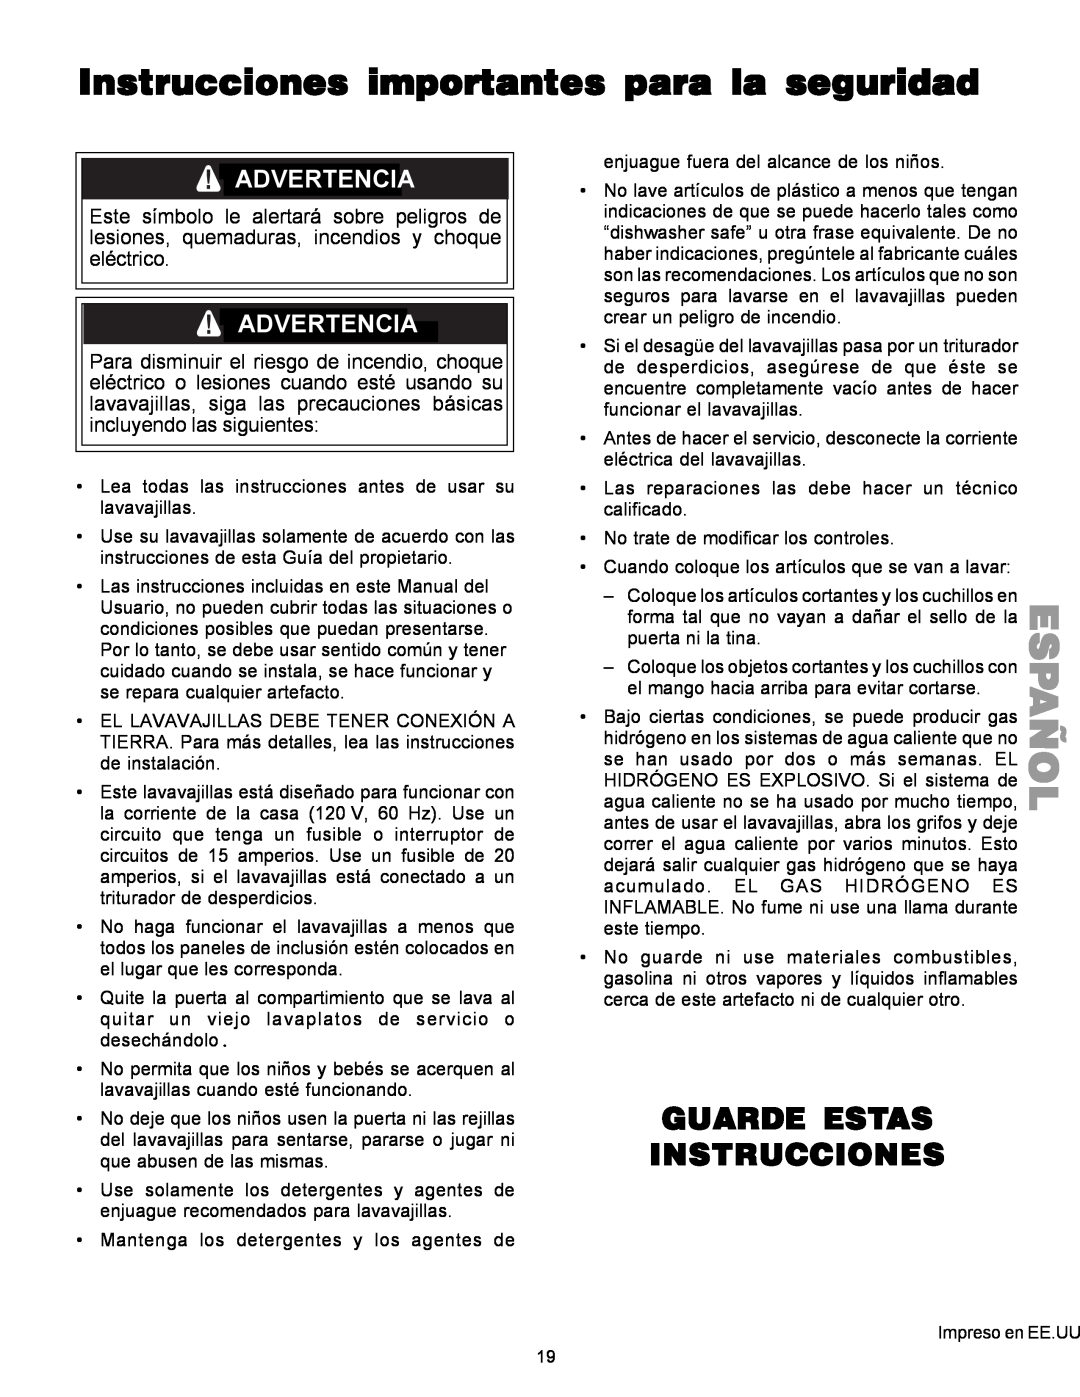 Kenmore 587.1441 manual Instrucciones importantes para la seguridad, Guarde Estas Instrucciones, Español, Advertencia 